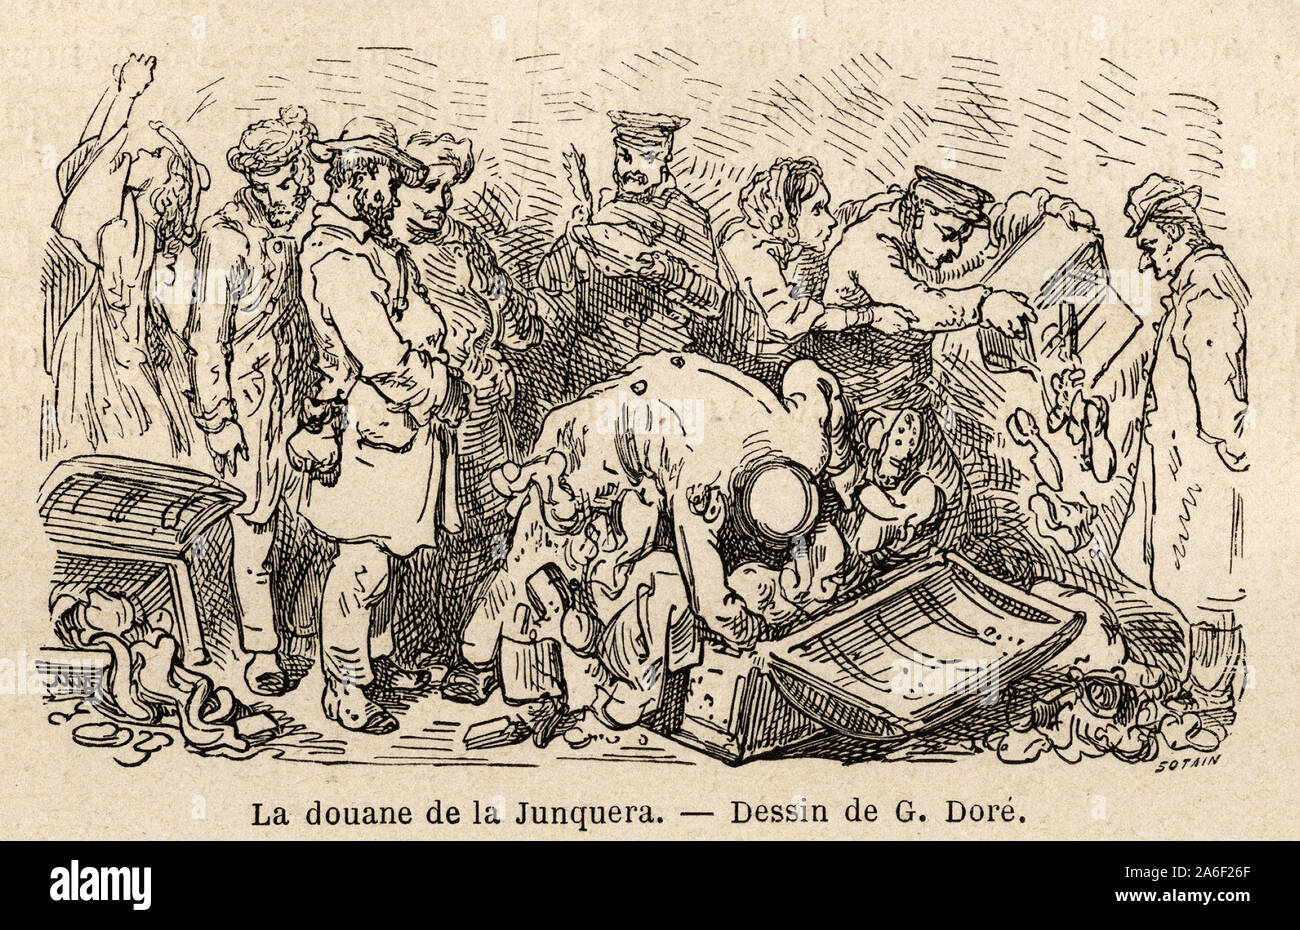 La douane de la junquera ( ville situee entre la Catalogne et la provincia de Gerone), dessin de Gustave Dore ( 1832-1883), pour illustrer figlio viaggio e Foto Stock